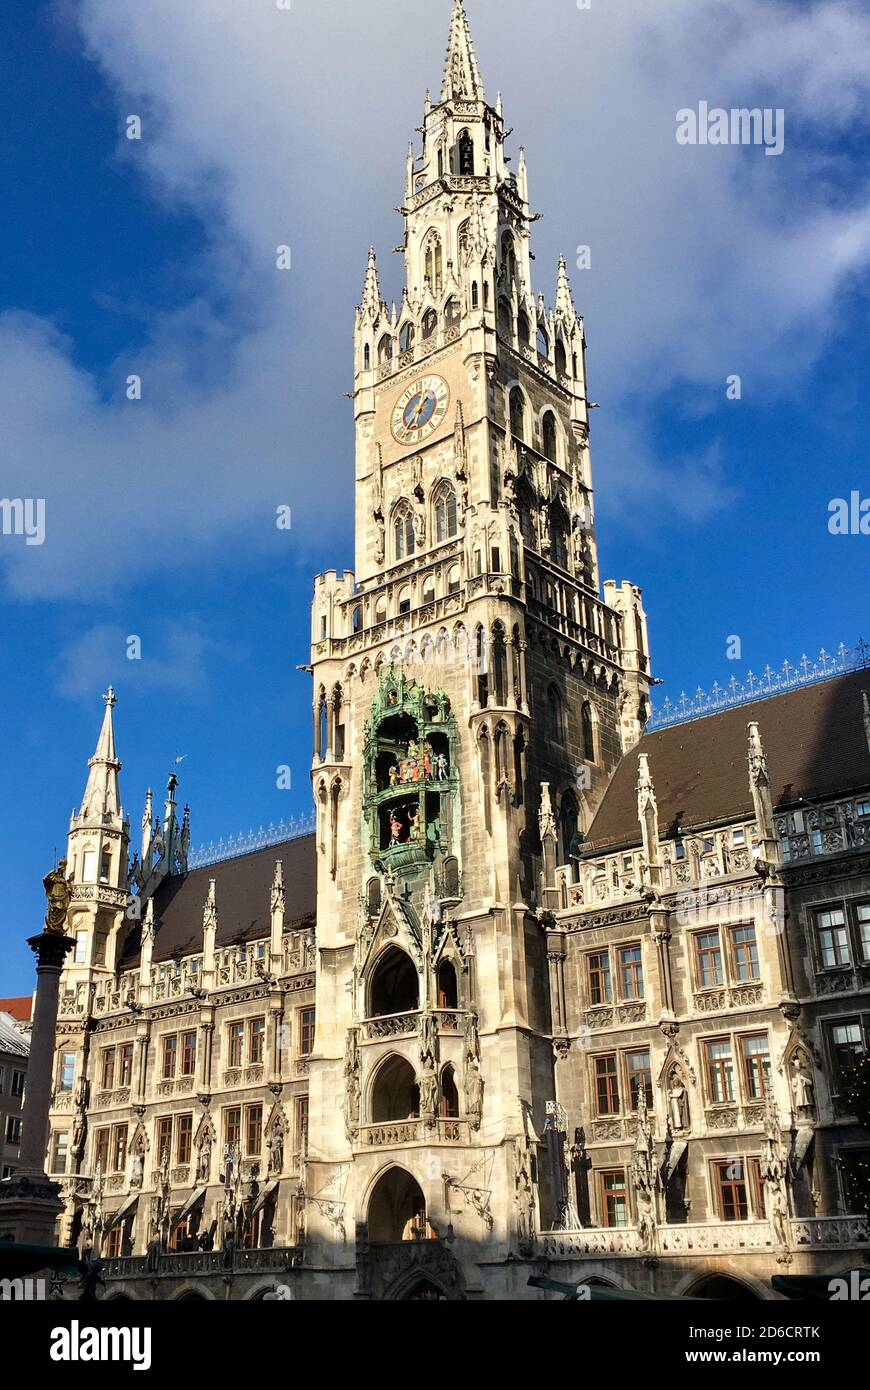 Neues Rathaus von München am Marienplatz mit dem Sitz des Oberbürgermeisters der bayerischen Landeshauptstadt - Deutschland. Stockfoto